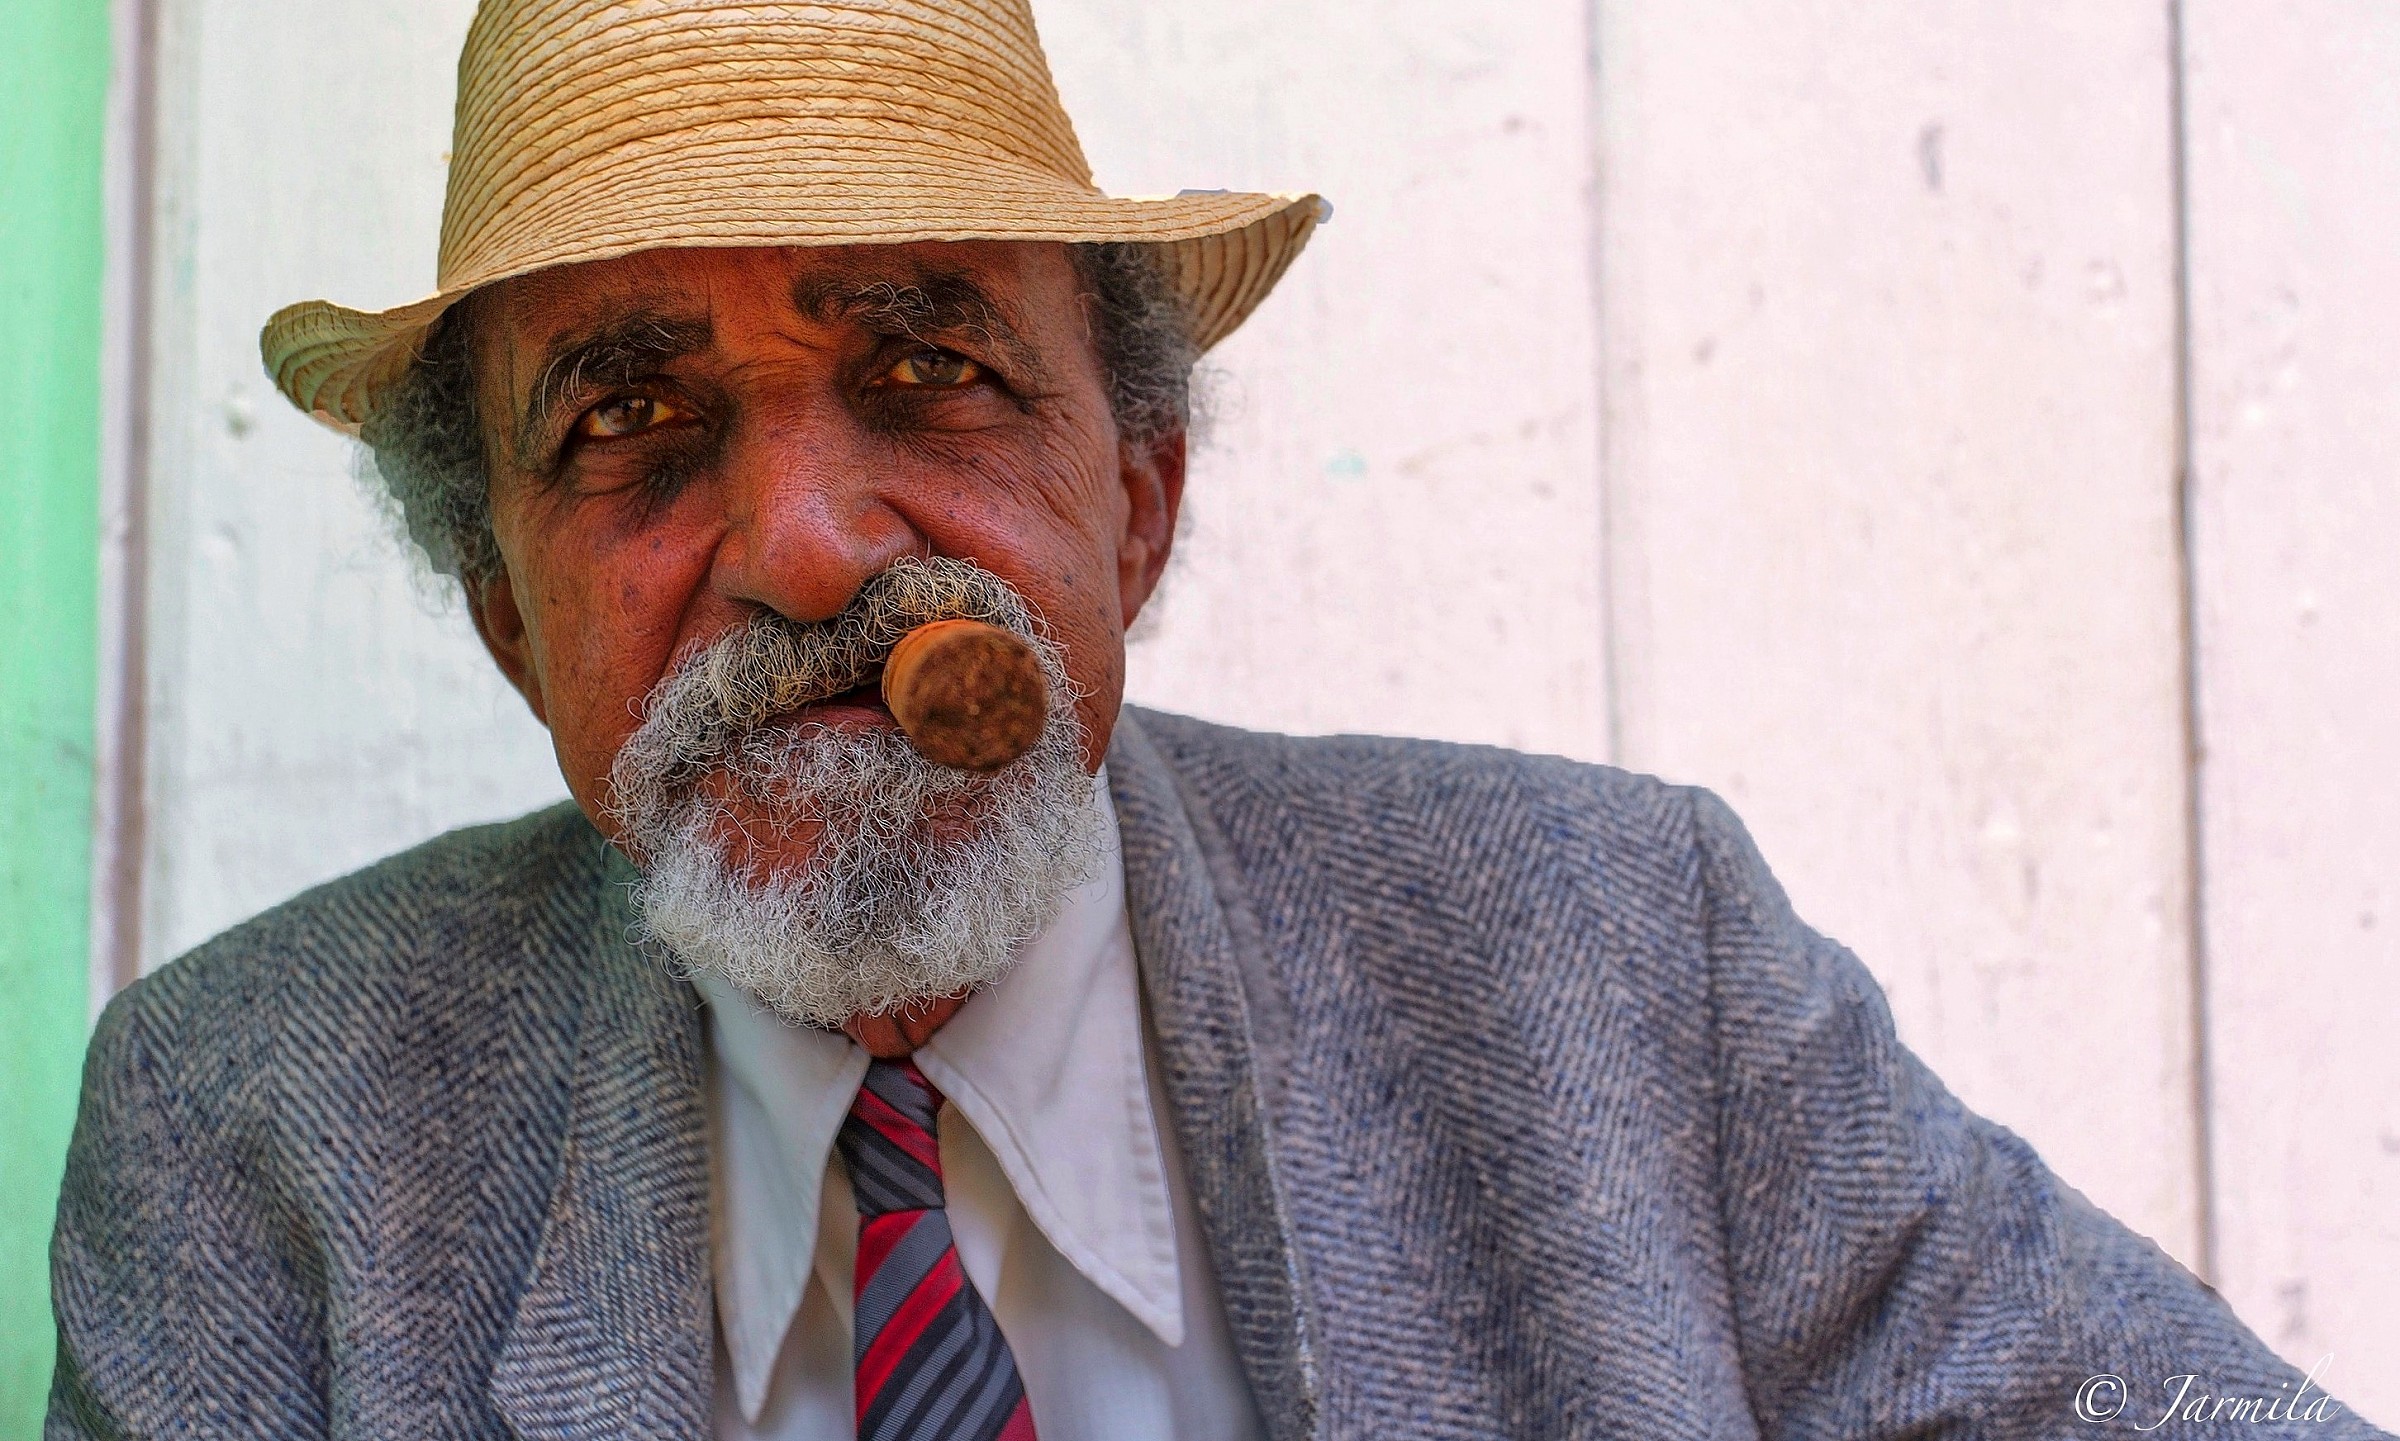 Cuban Man With Cigar...